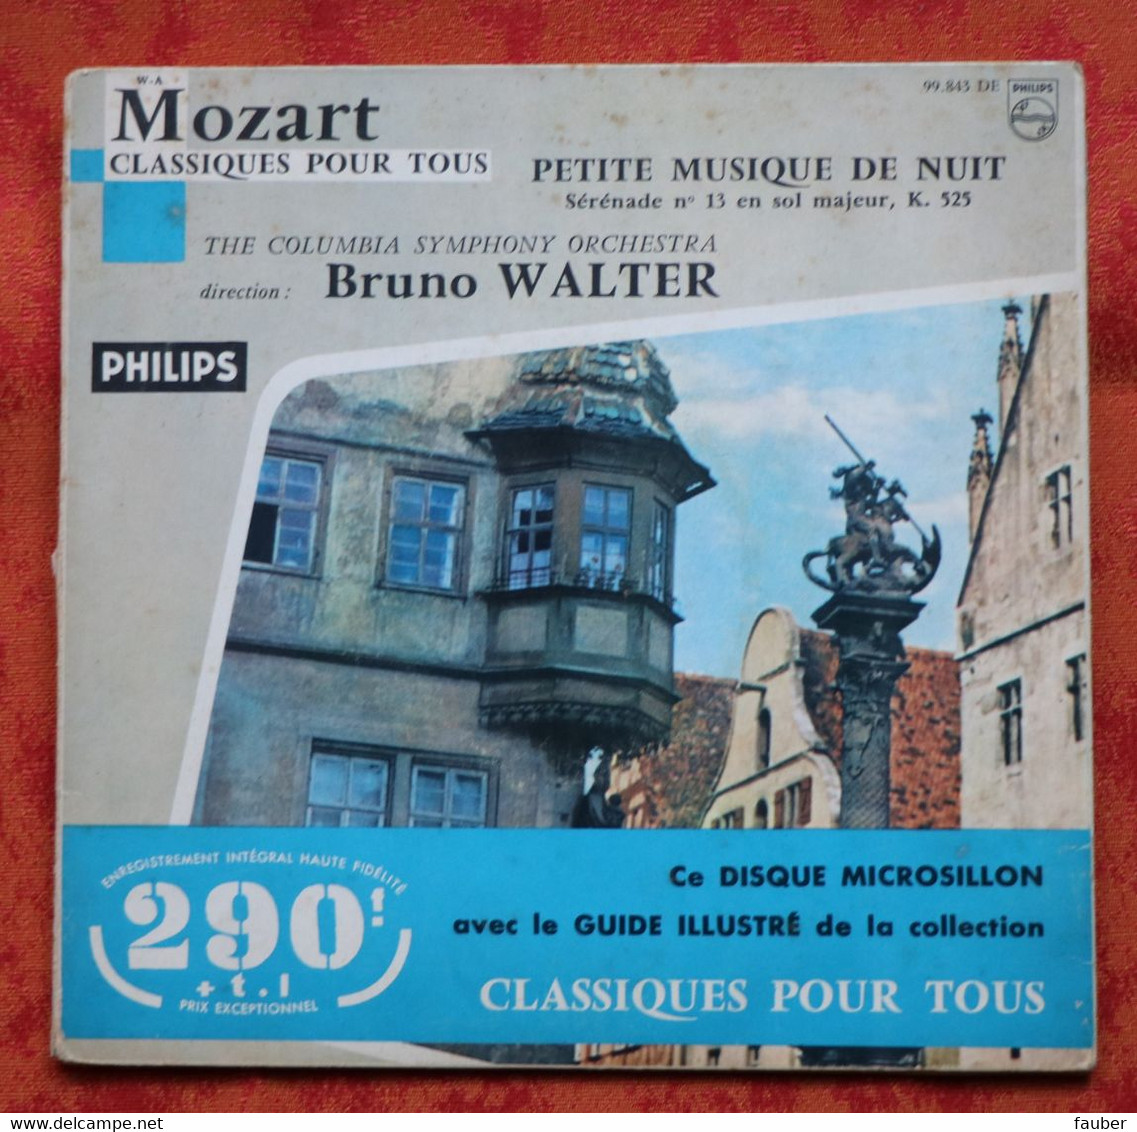 Mozart - Petite Musique De Nuit - Colombia Symphony Orchestra - Bruno Walter - Philips - Clásica